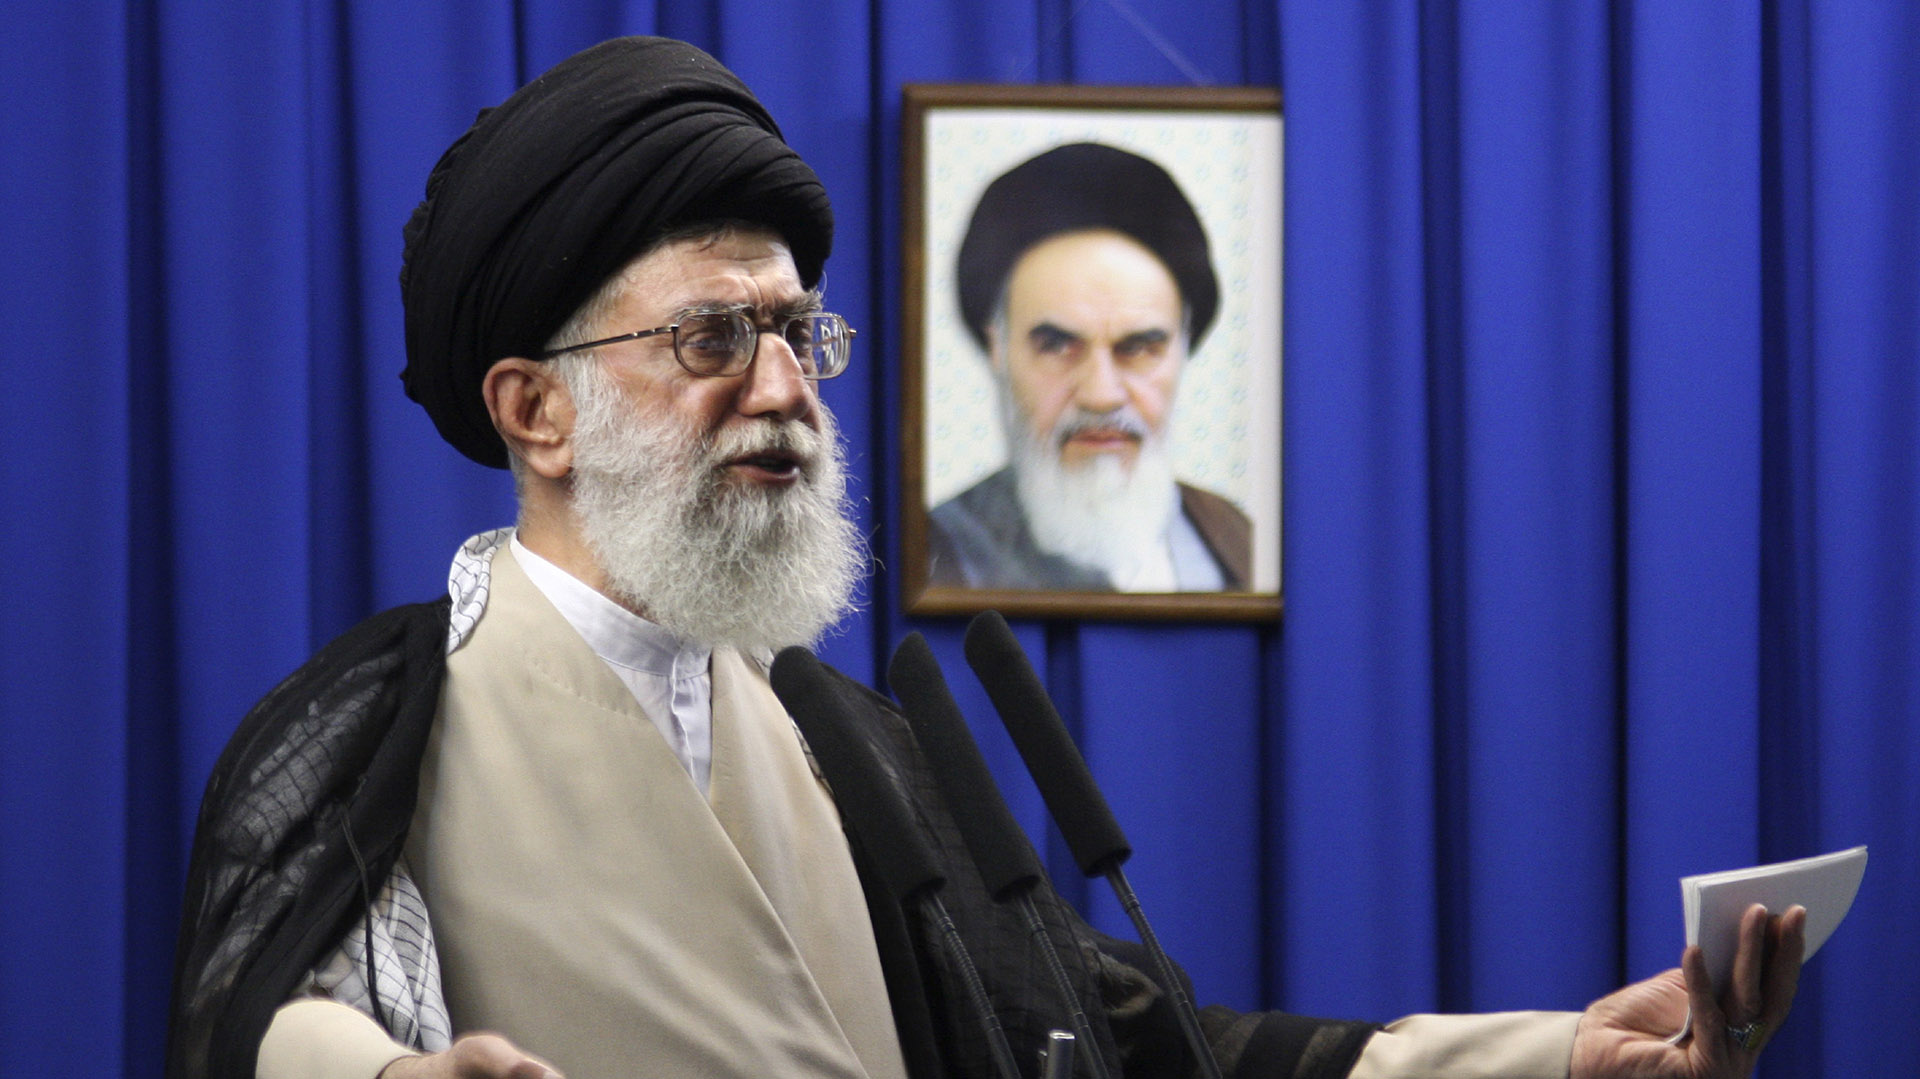 El líder supremo de Irán, Ali Khamenei, reiteró la fatwa en 2017: “El decreto continúa tal y como lo emitió Khomeini”.  (Meisam Hosseini/Hayat News Agency via AP)